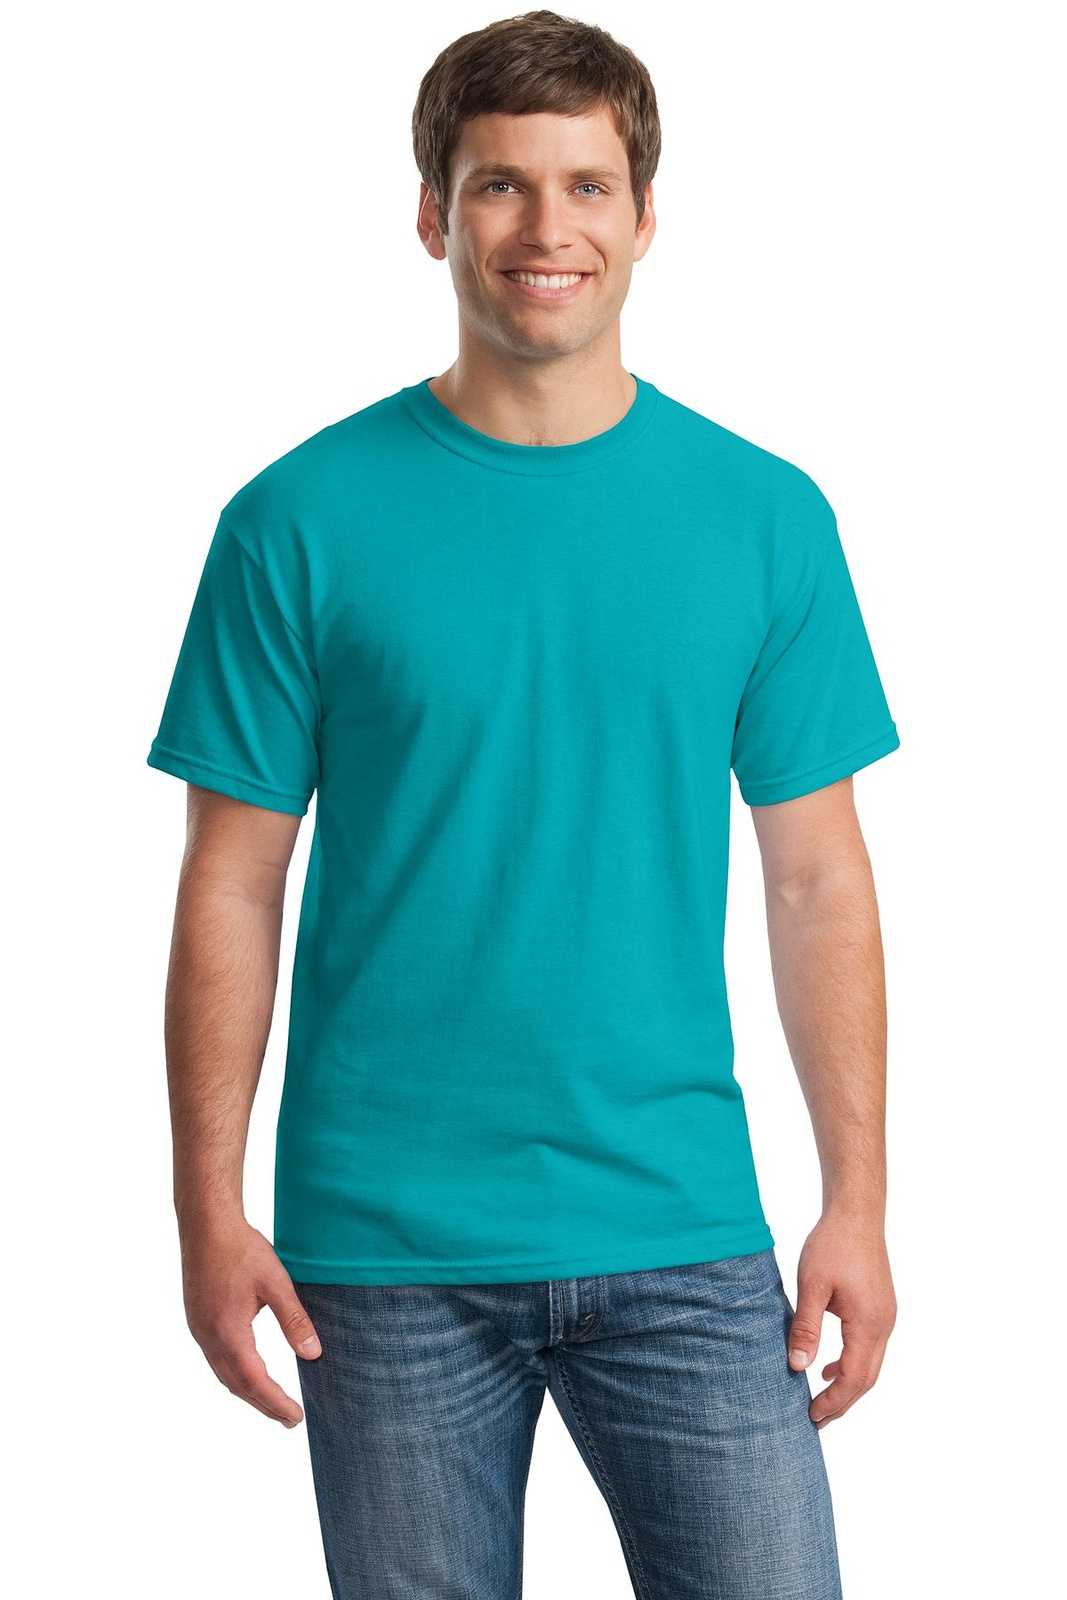 Gildan 5000 Heavy Cotton 100% Cotton T-Shirt - Tropical Blue